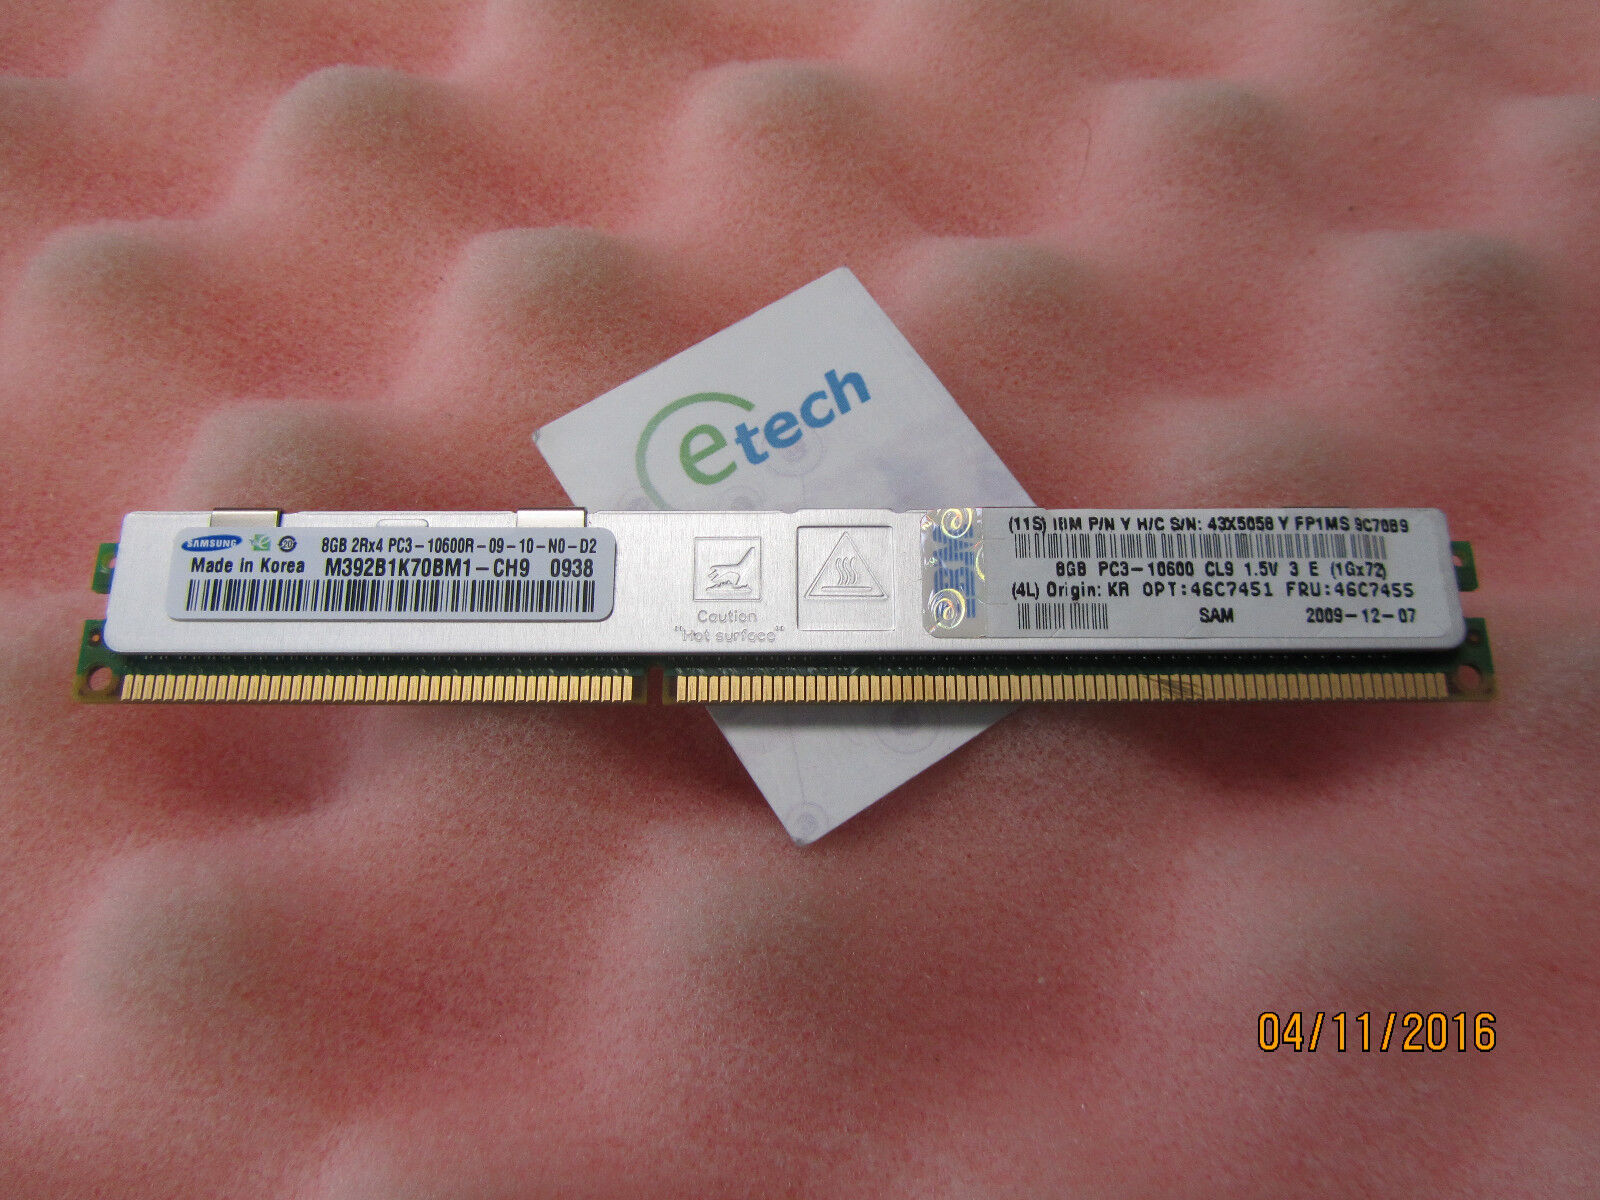 46C7451 - 8 GB 2rx4 PC3-10600R ECC DDR3-1333 VLP RDIMM, 46C7455 for HS22 HS22v